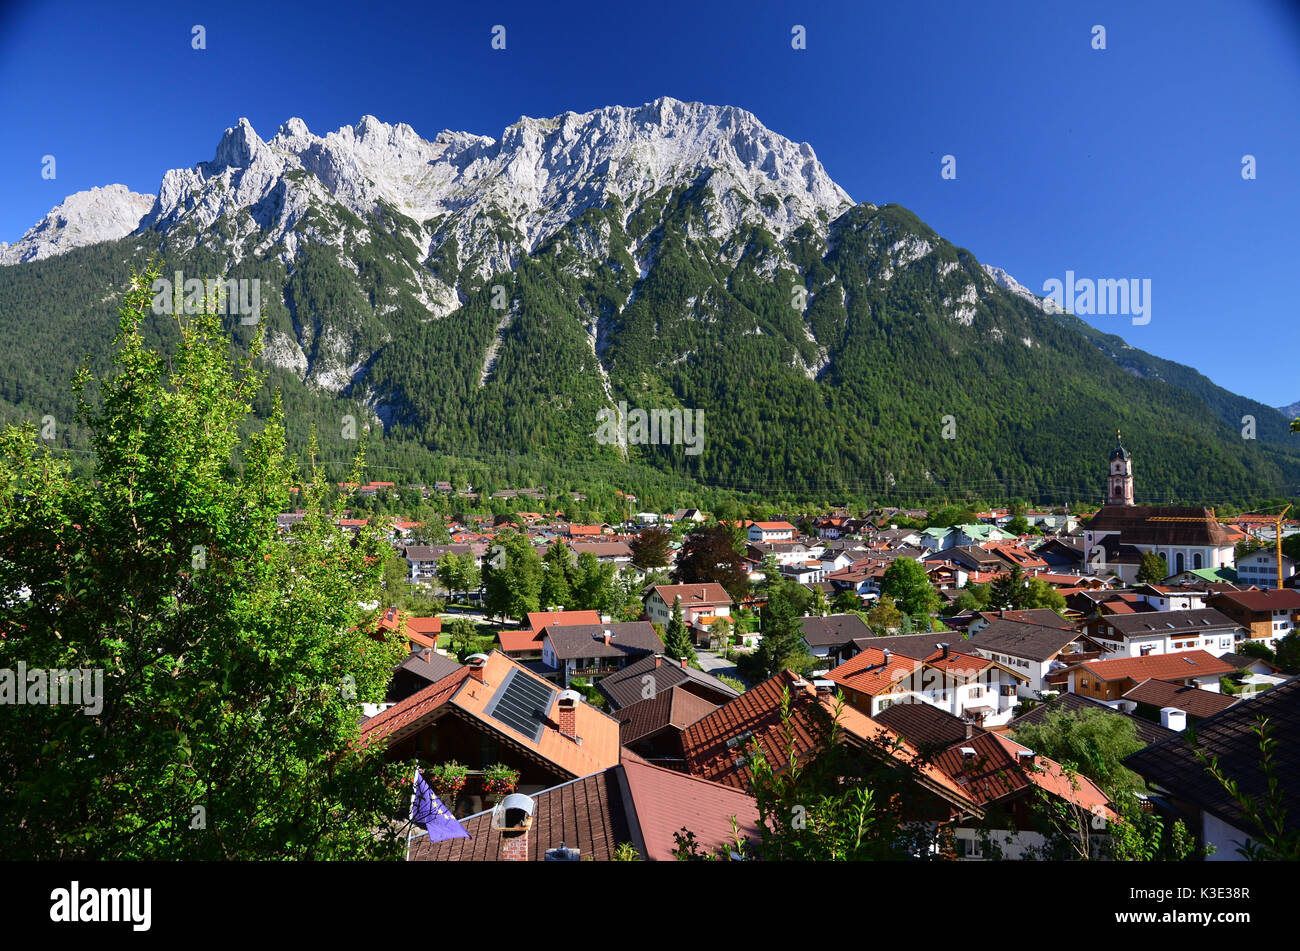 Deutschland, Bayern, Isartal, Mittenwald, Ortsbild, Karwendel, Stock Photo